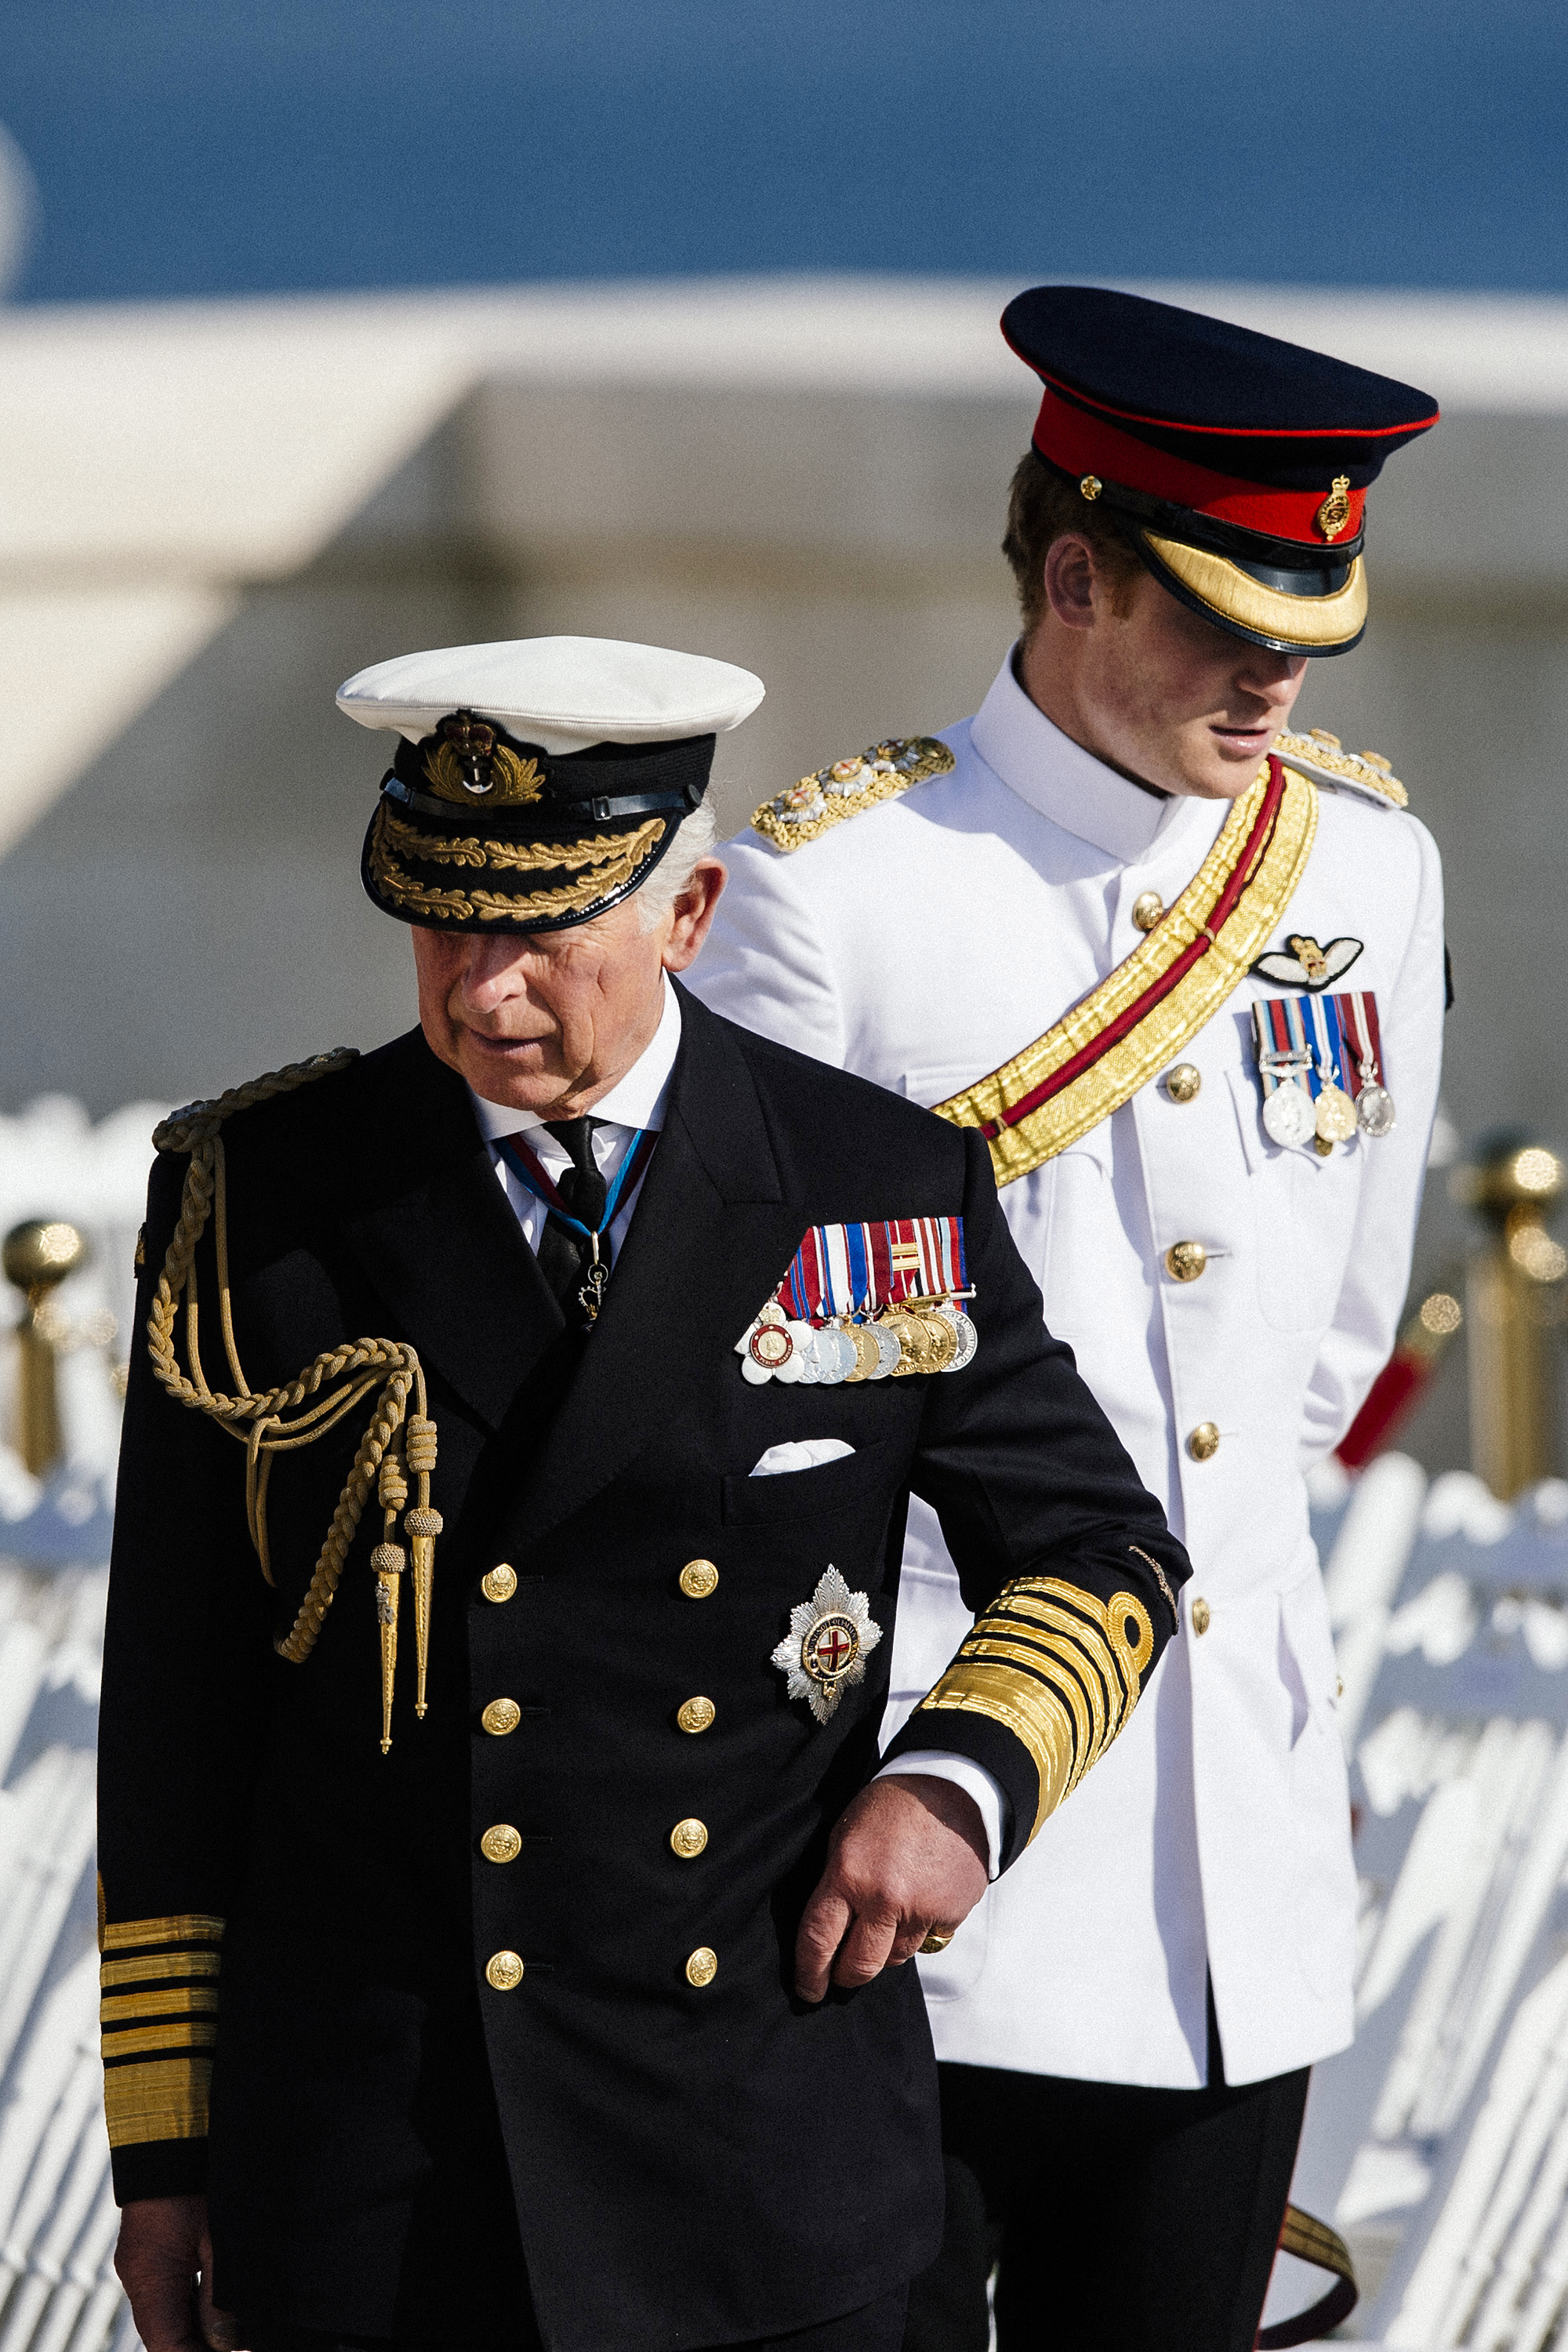 Le roi Charles III et le prince Harry assistent à un service commémoratif marquant le 100e anniversaire du début de la bataille de Gallipoli sur la péninsule de Gallipoli, en Turquie, le 24 avril 2015 | Source : Getty Images